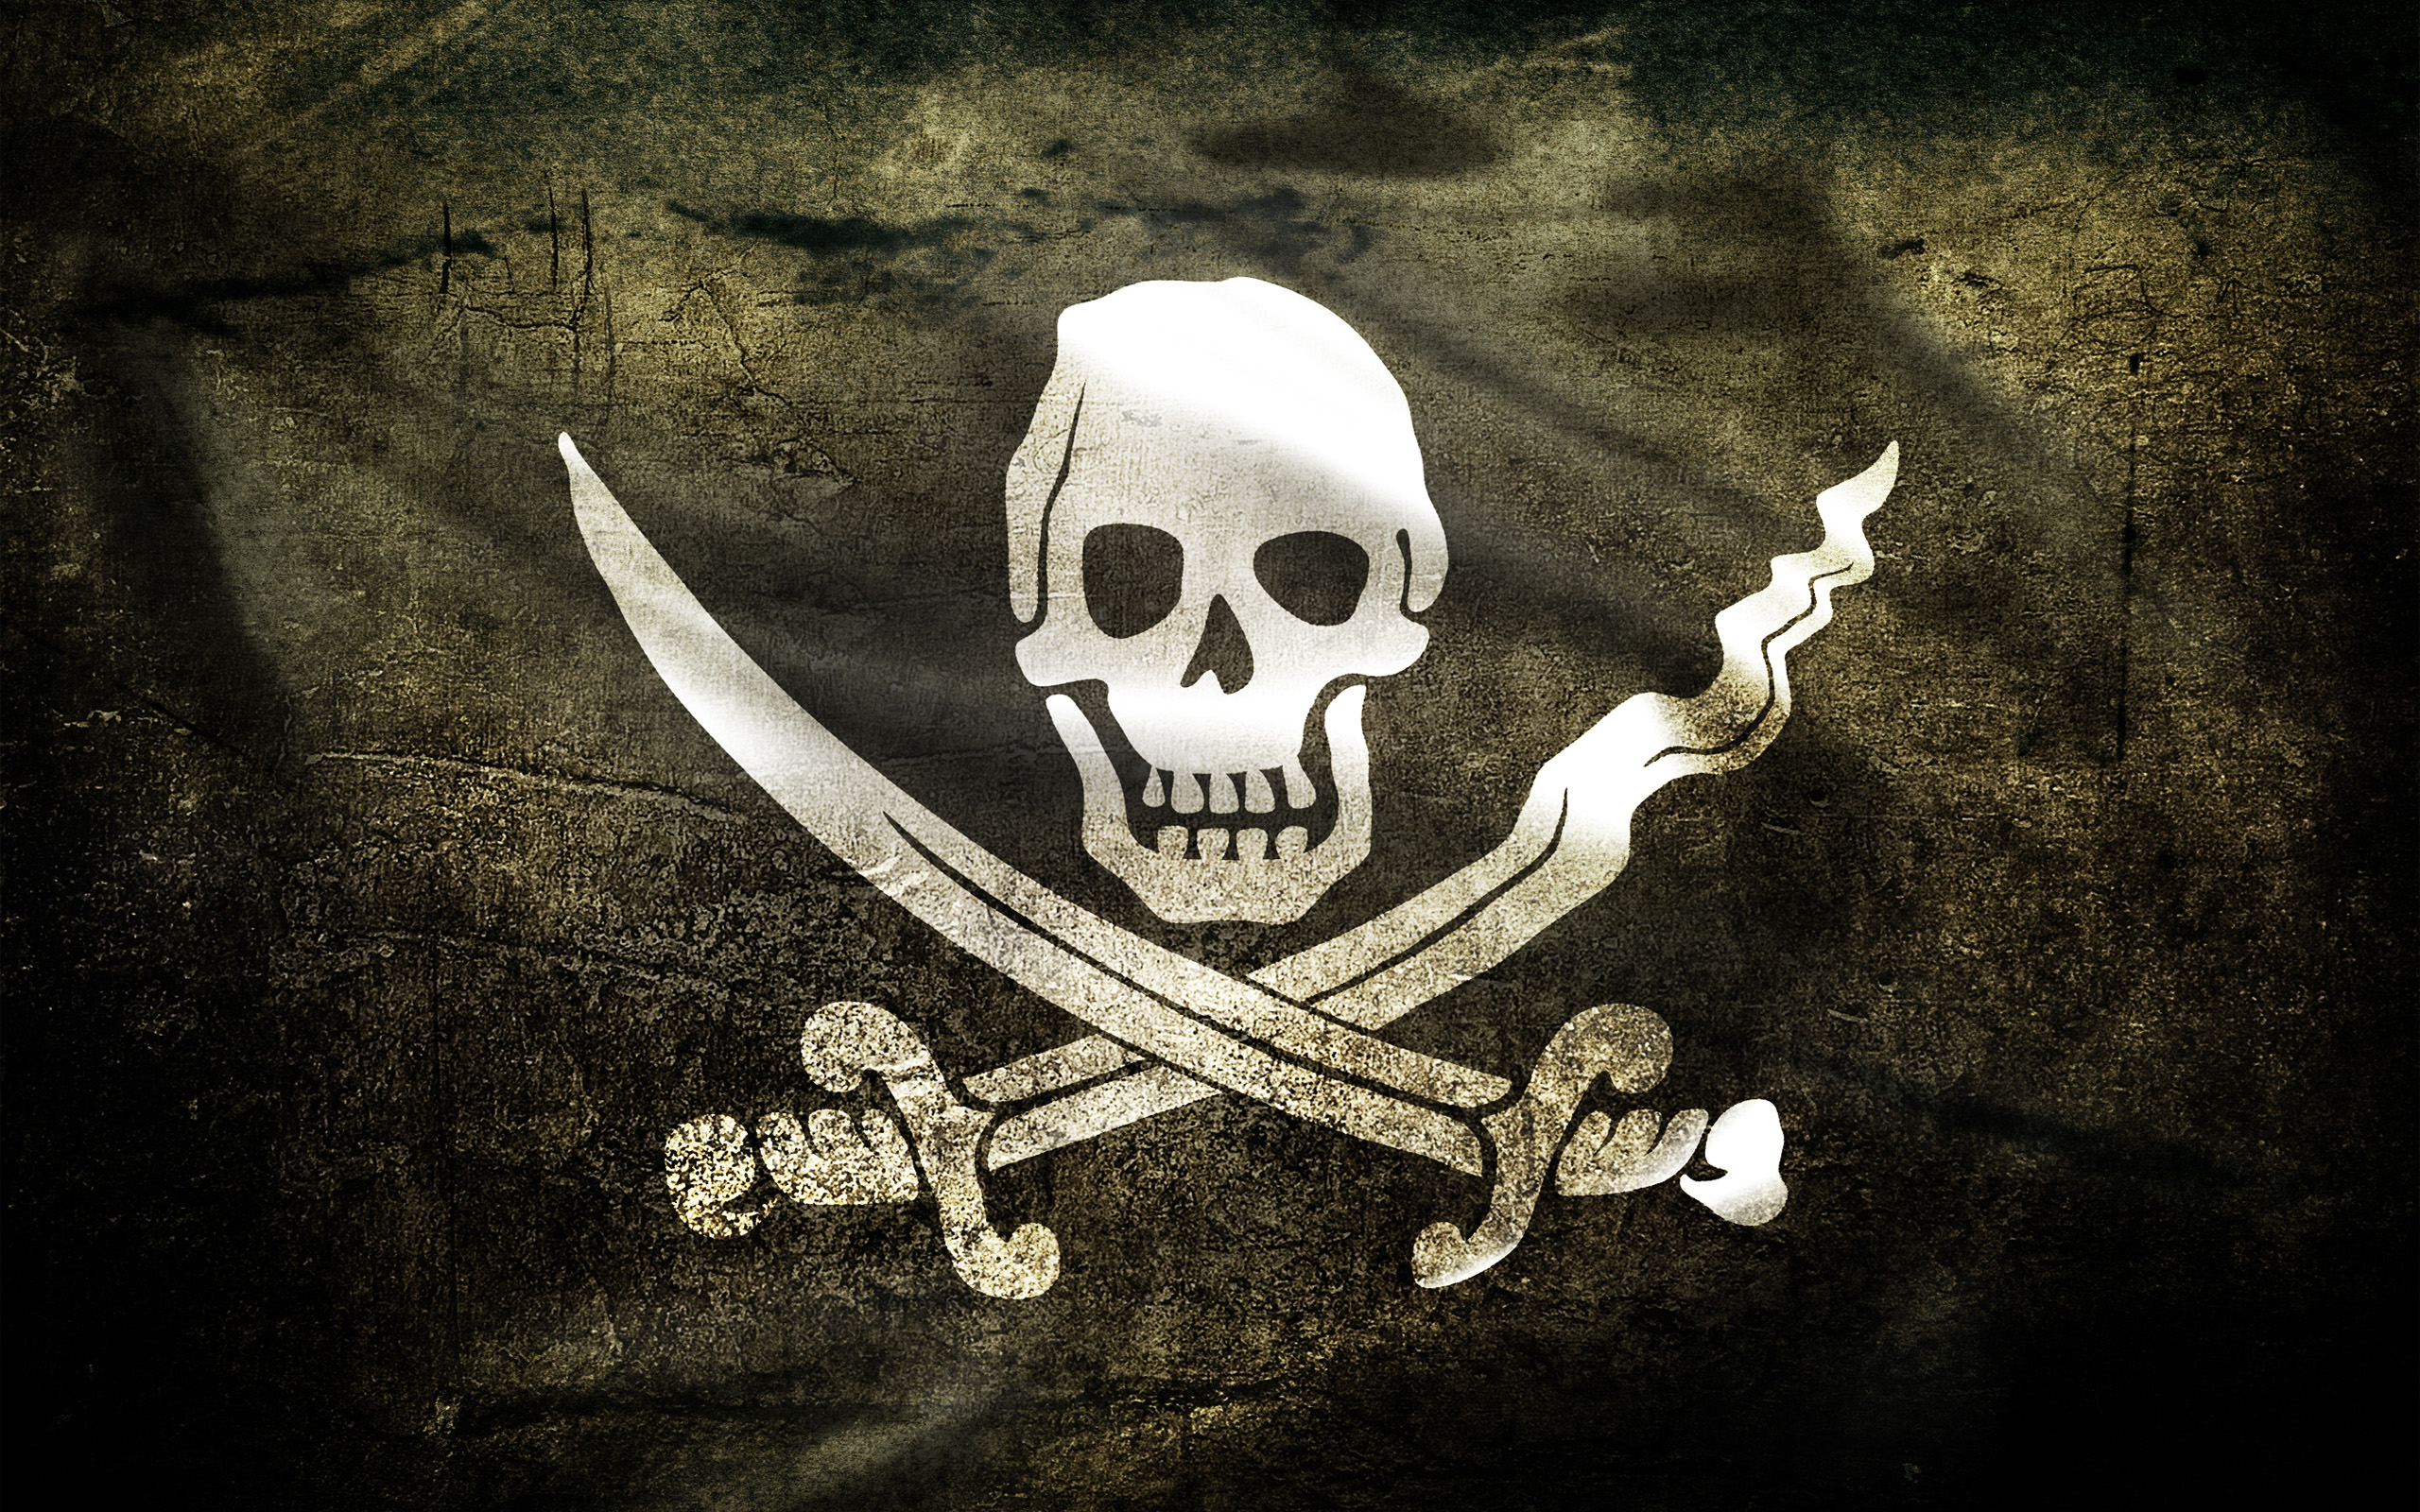 pirates, flags, skull and crossbones, Jolly Roger - desktop wallpaper